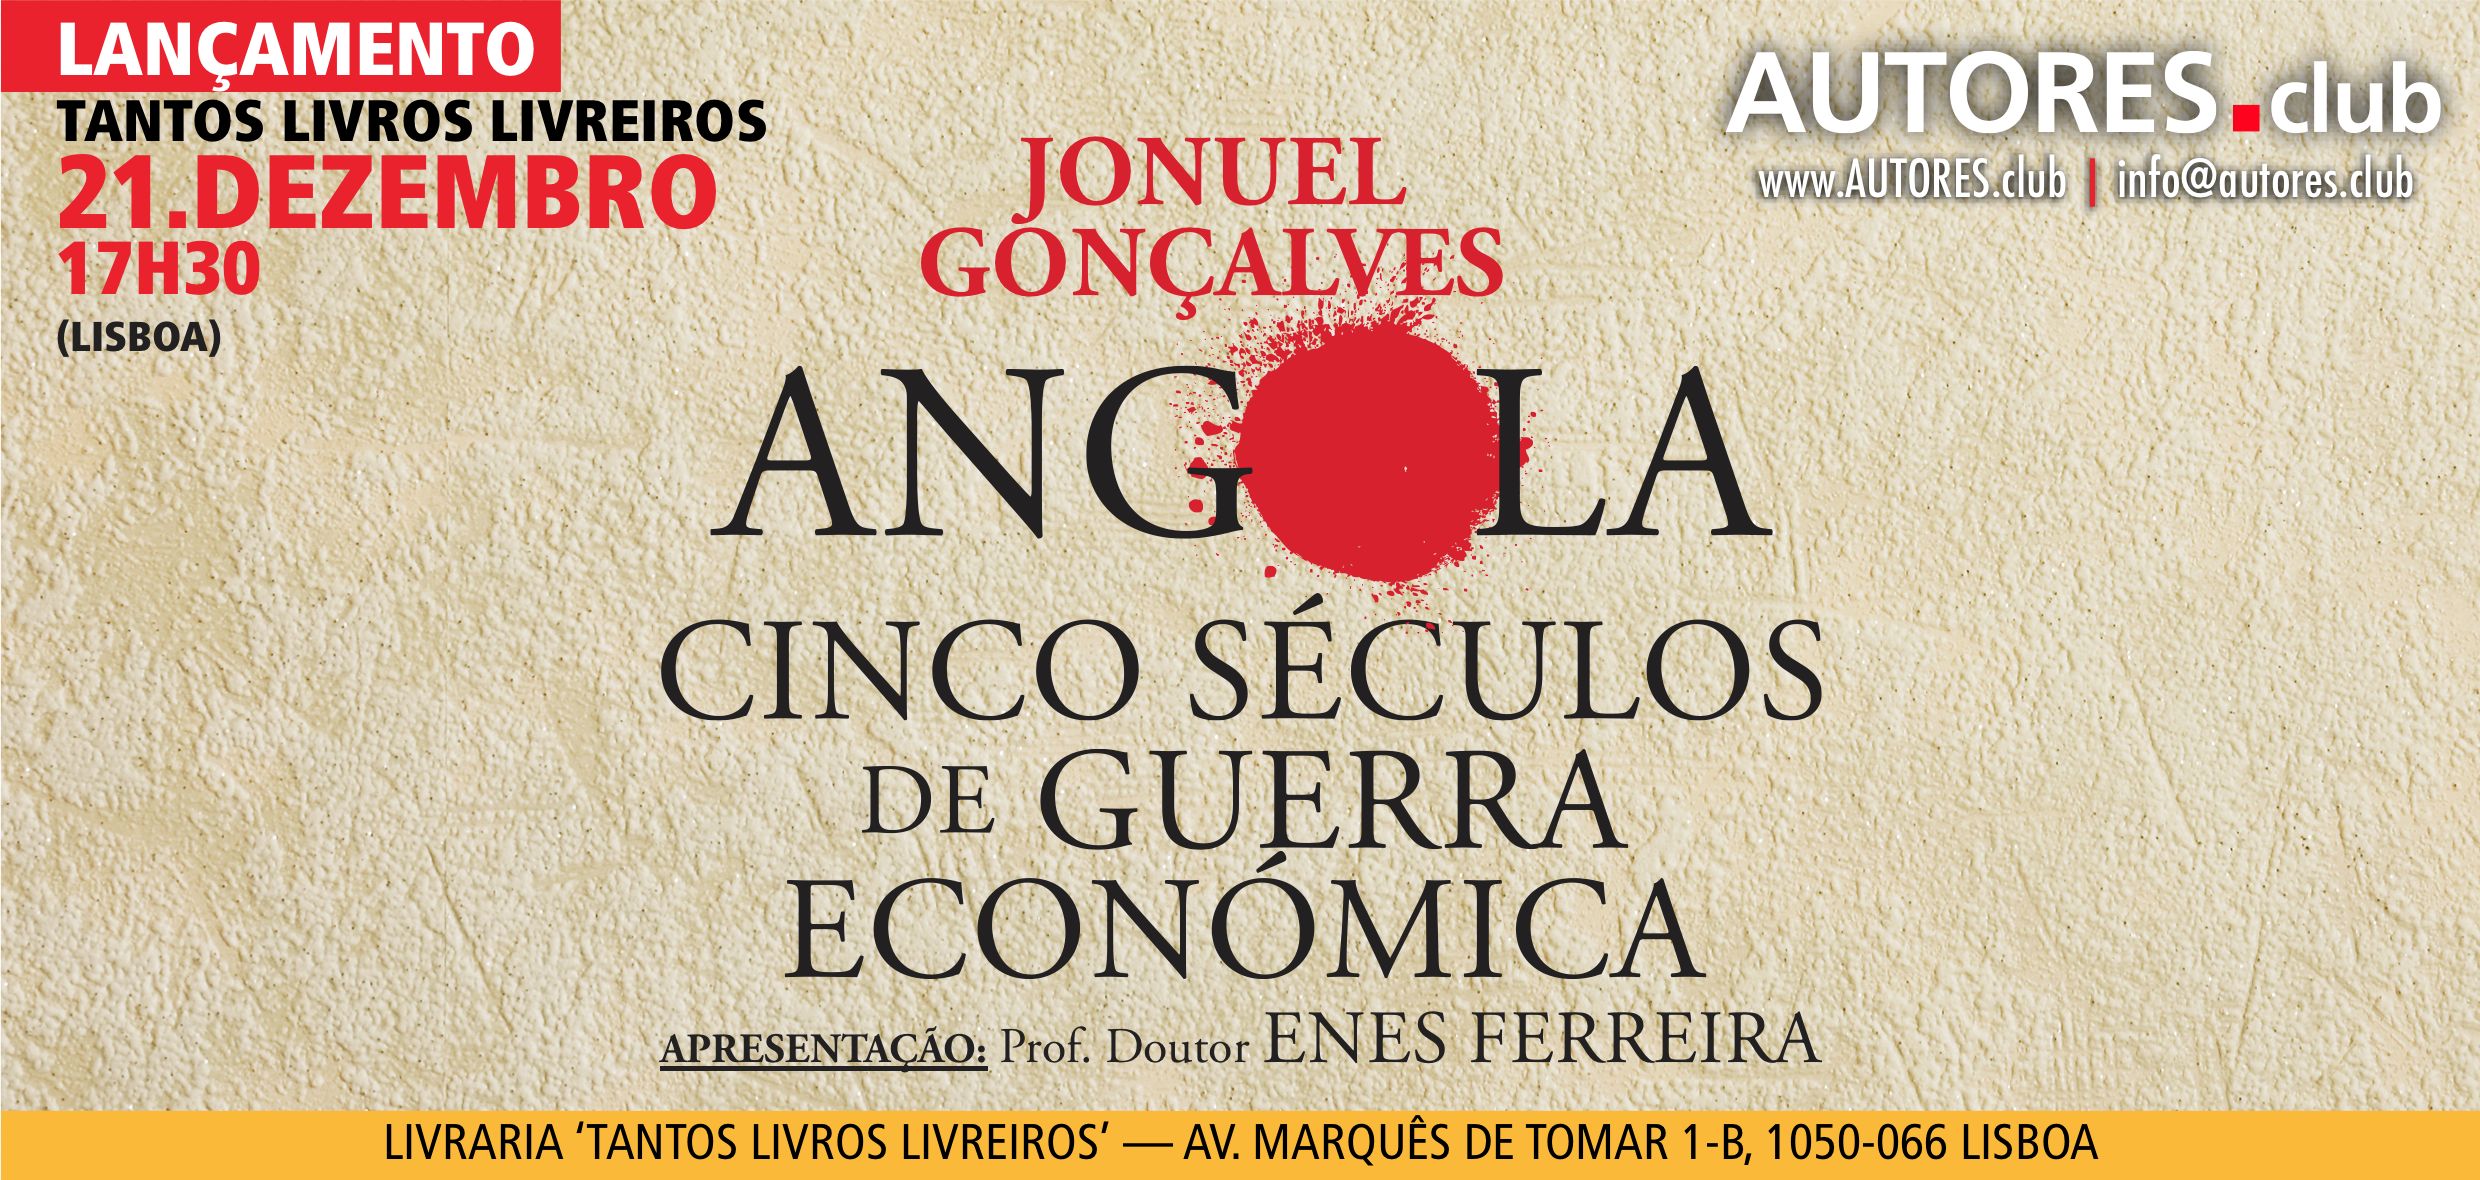 “Angola cinco séculos de guerra económica”